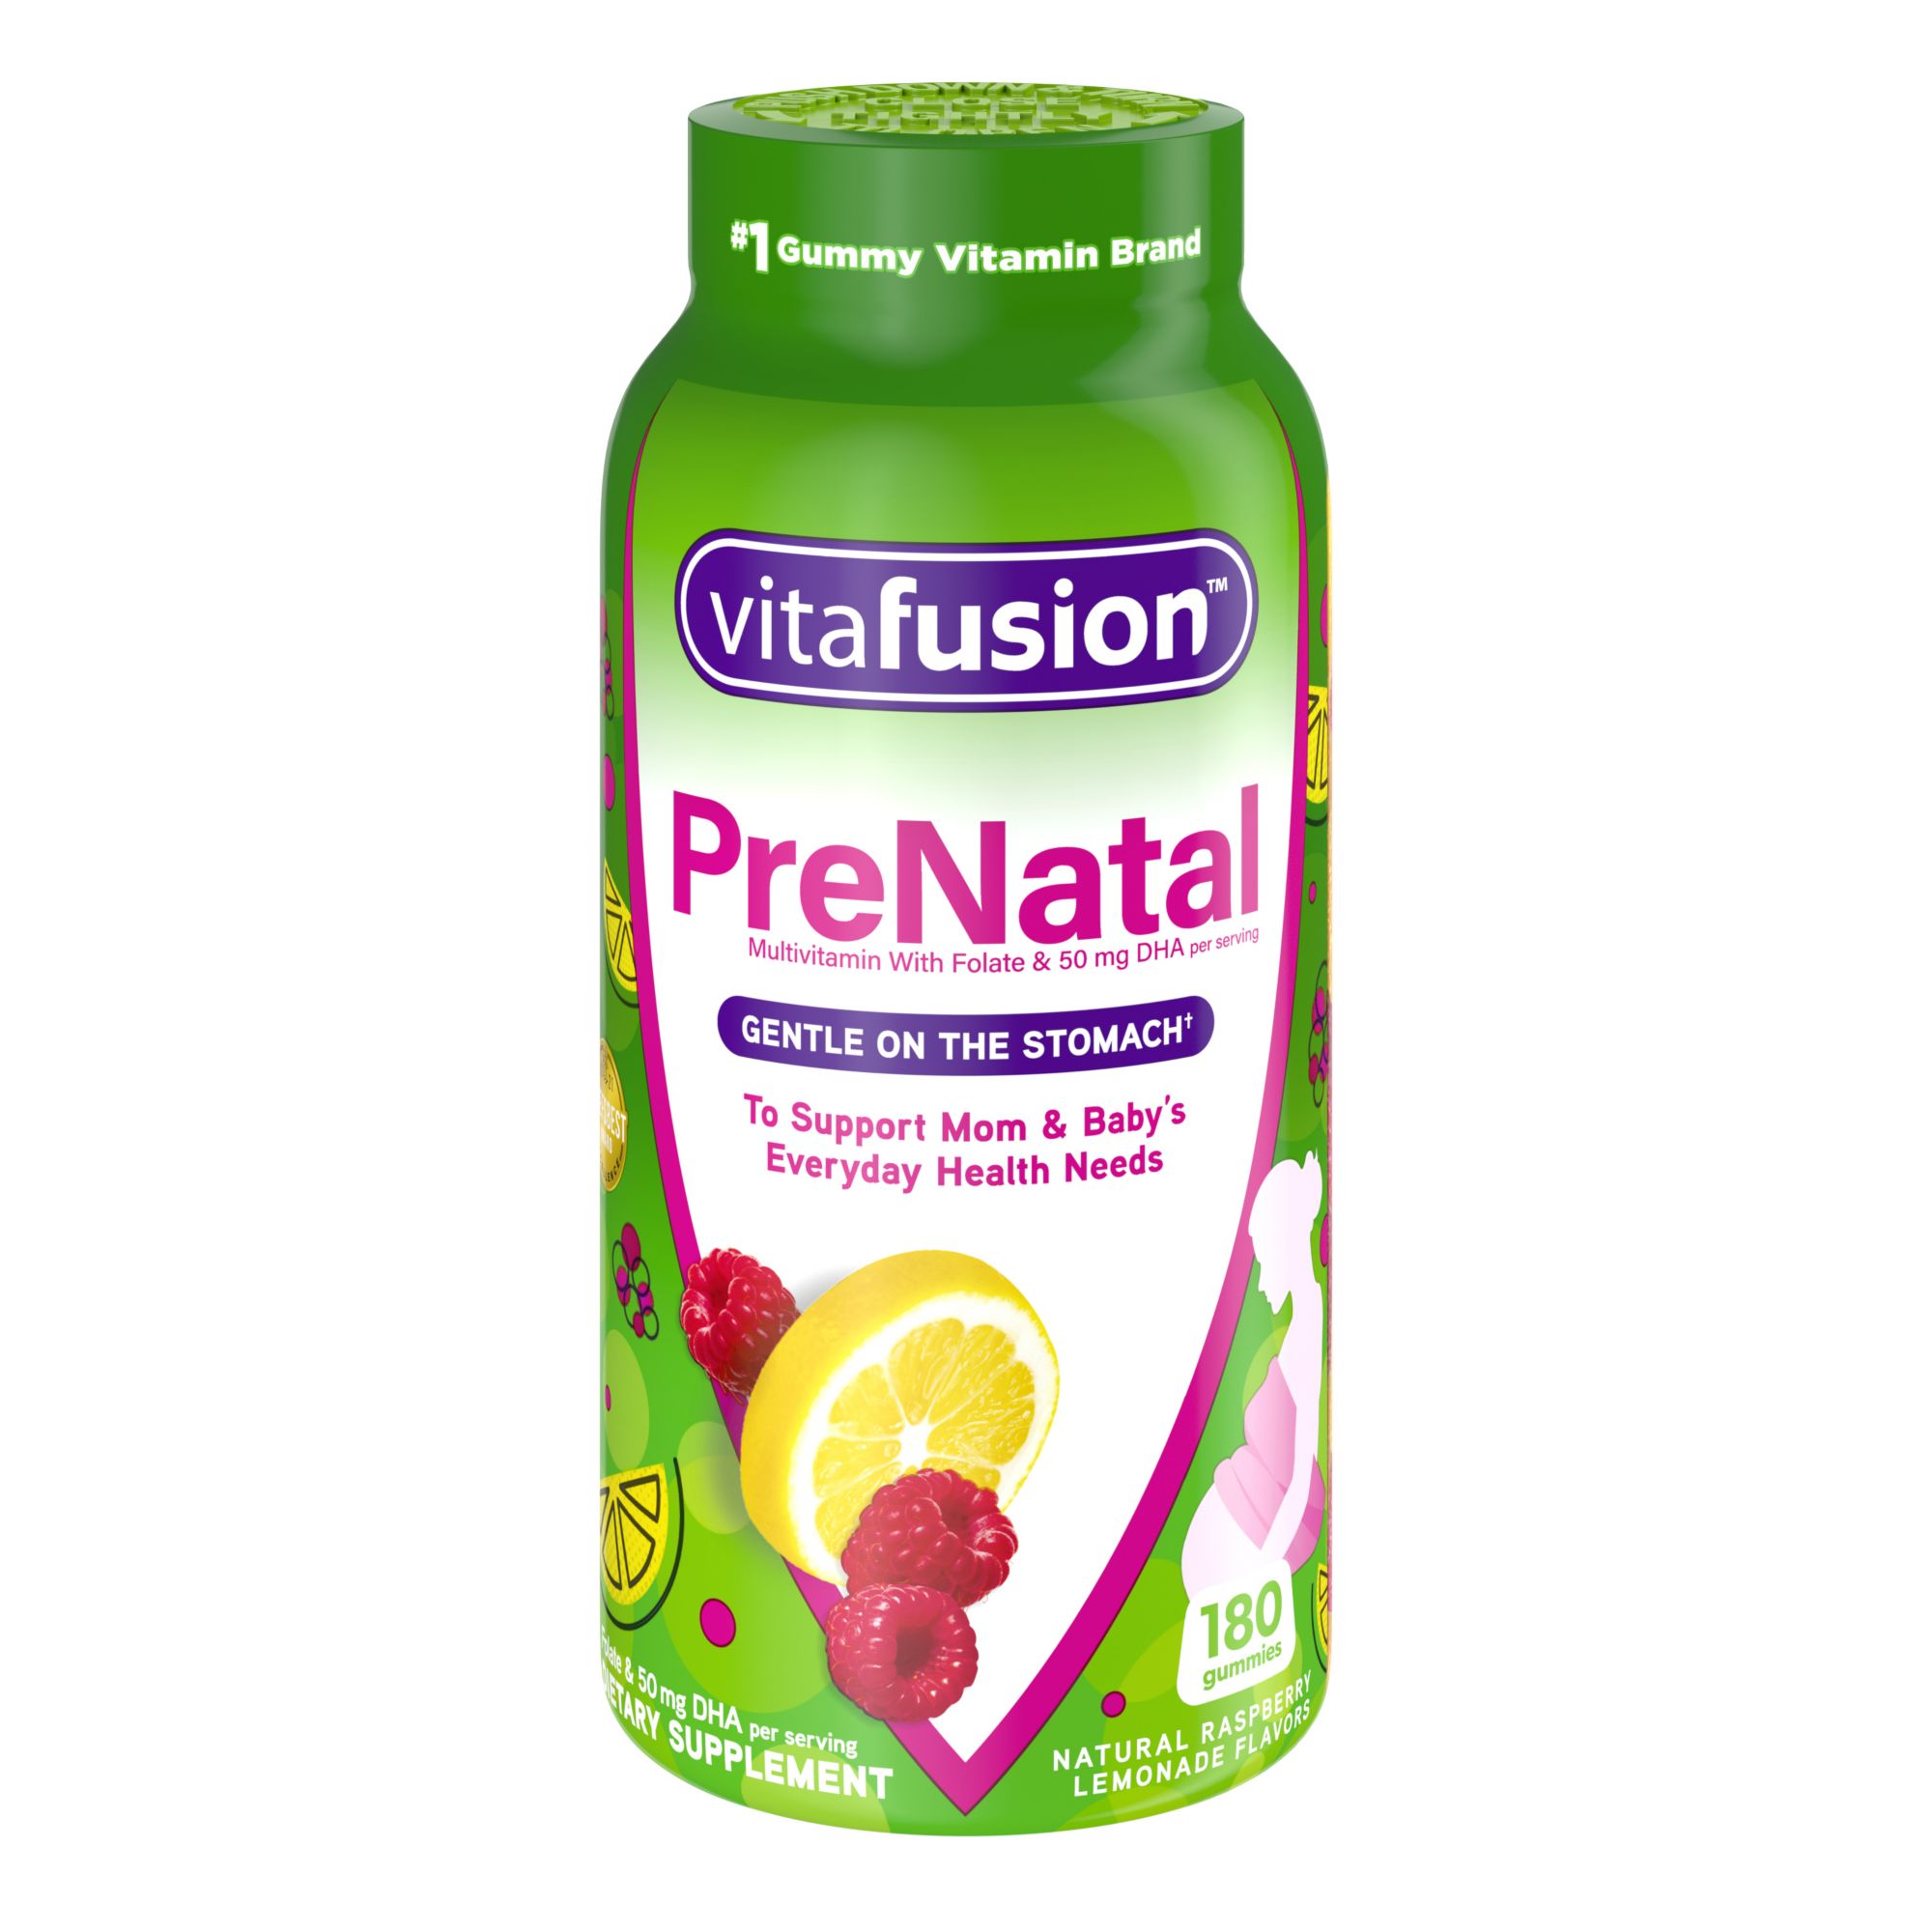 VitaFusion PreNatal DHA, Folate and Multivitamin Gummy, 180 ct.